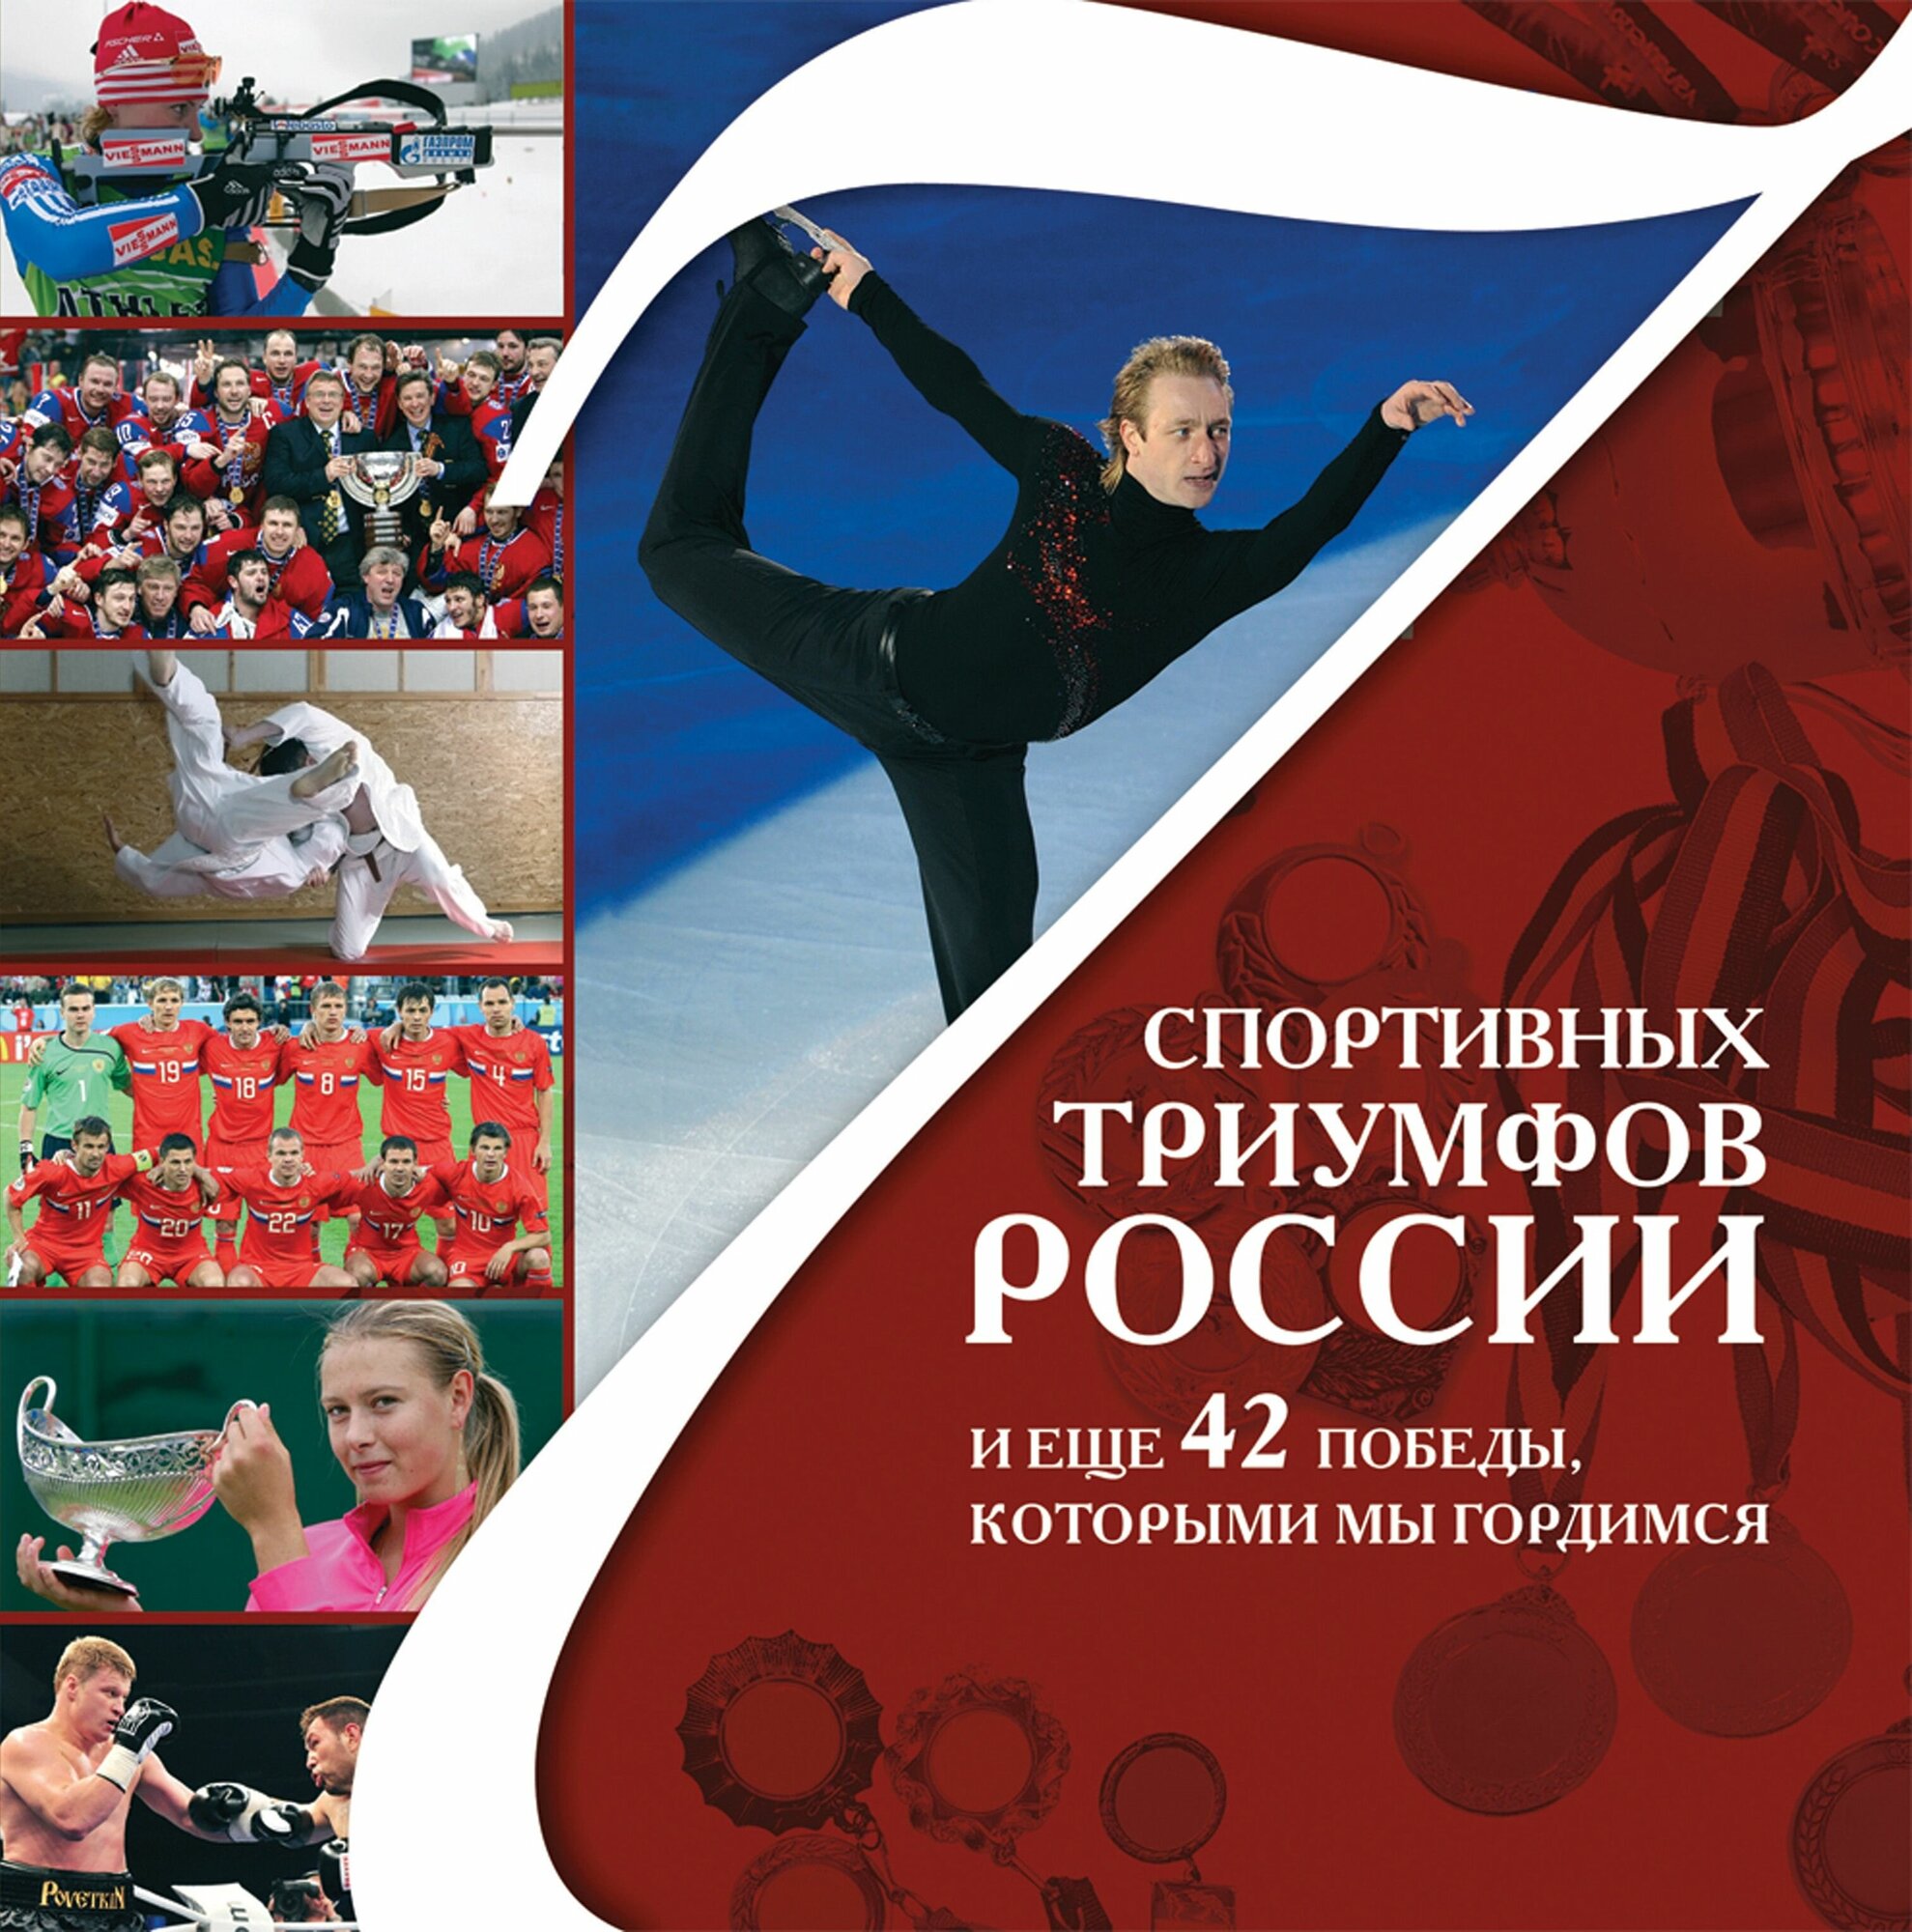 7 спортивных триумфов России и еще 42 победы, которыми мы гордимся - фото №2